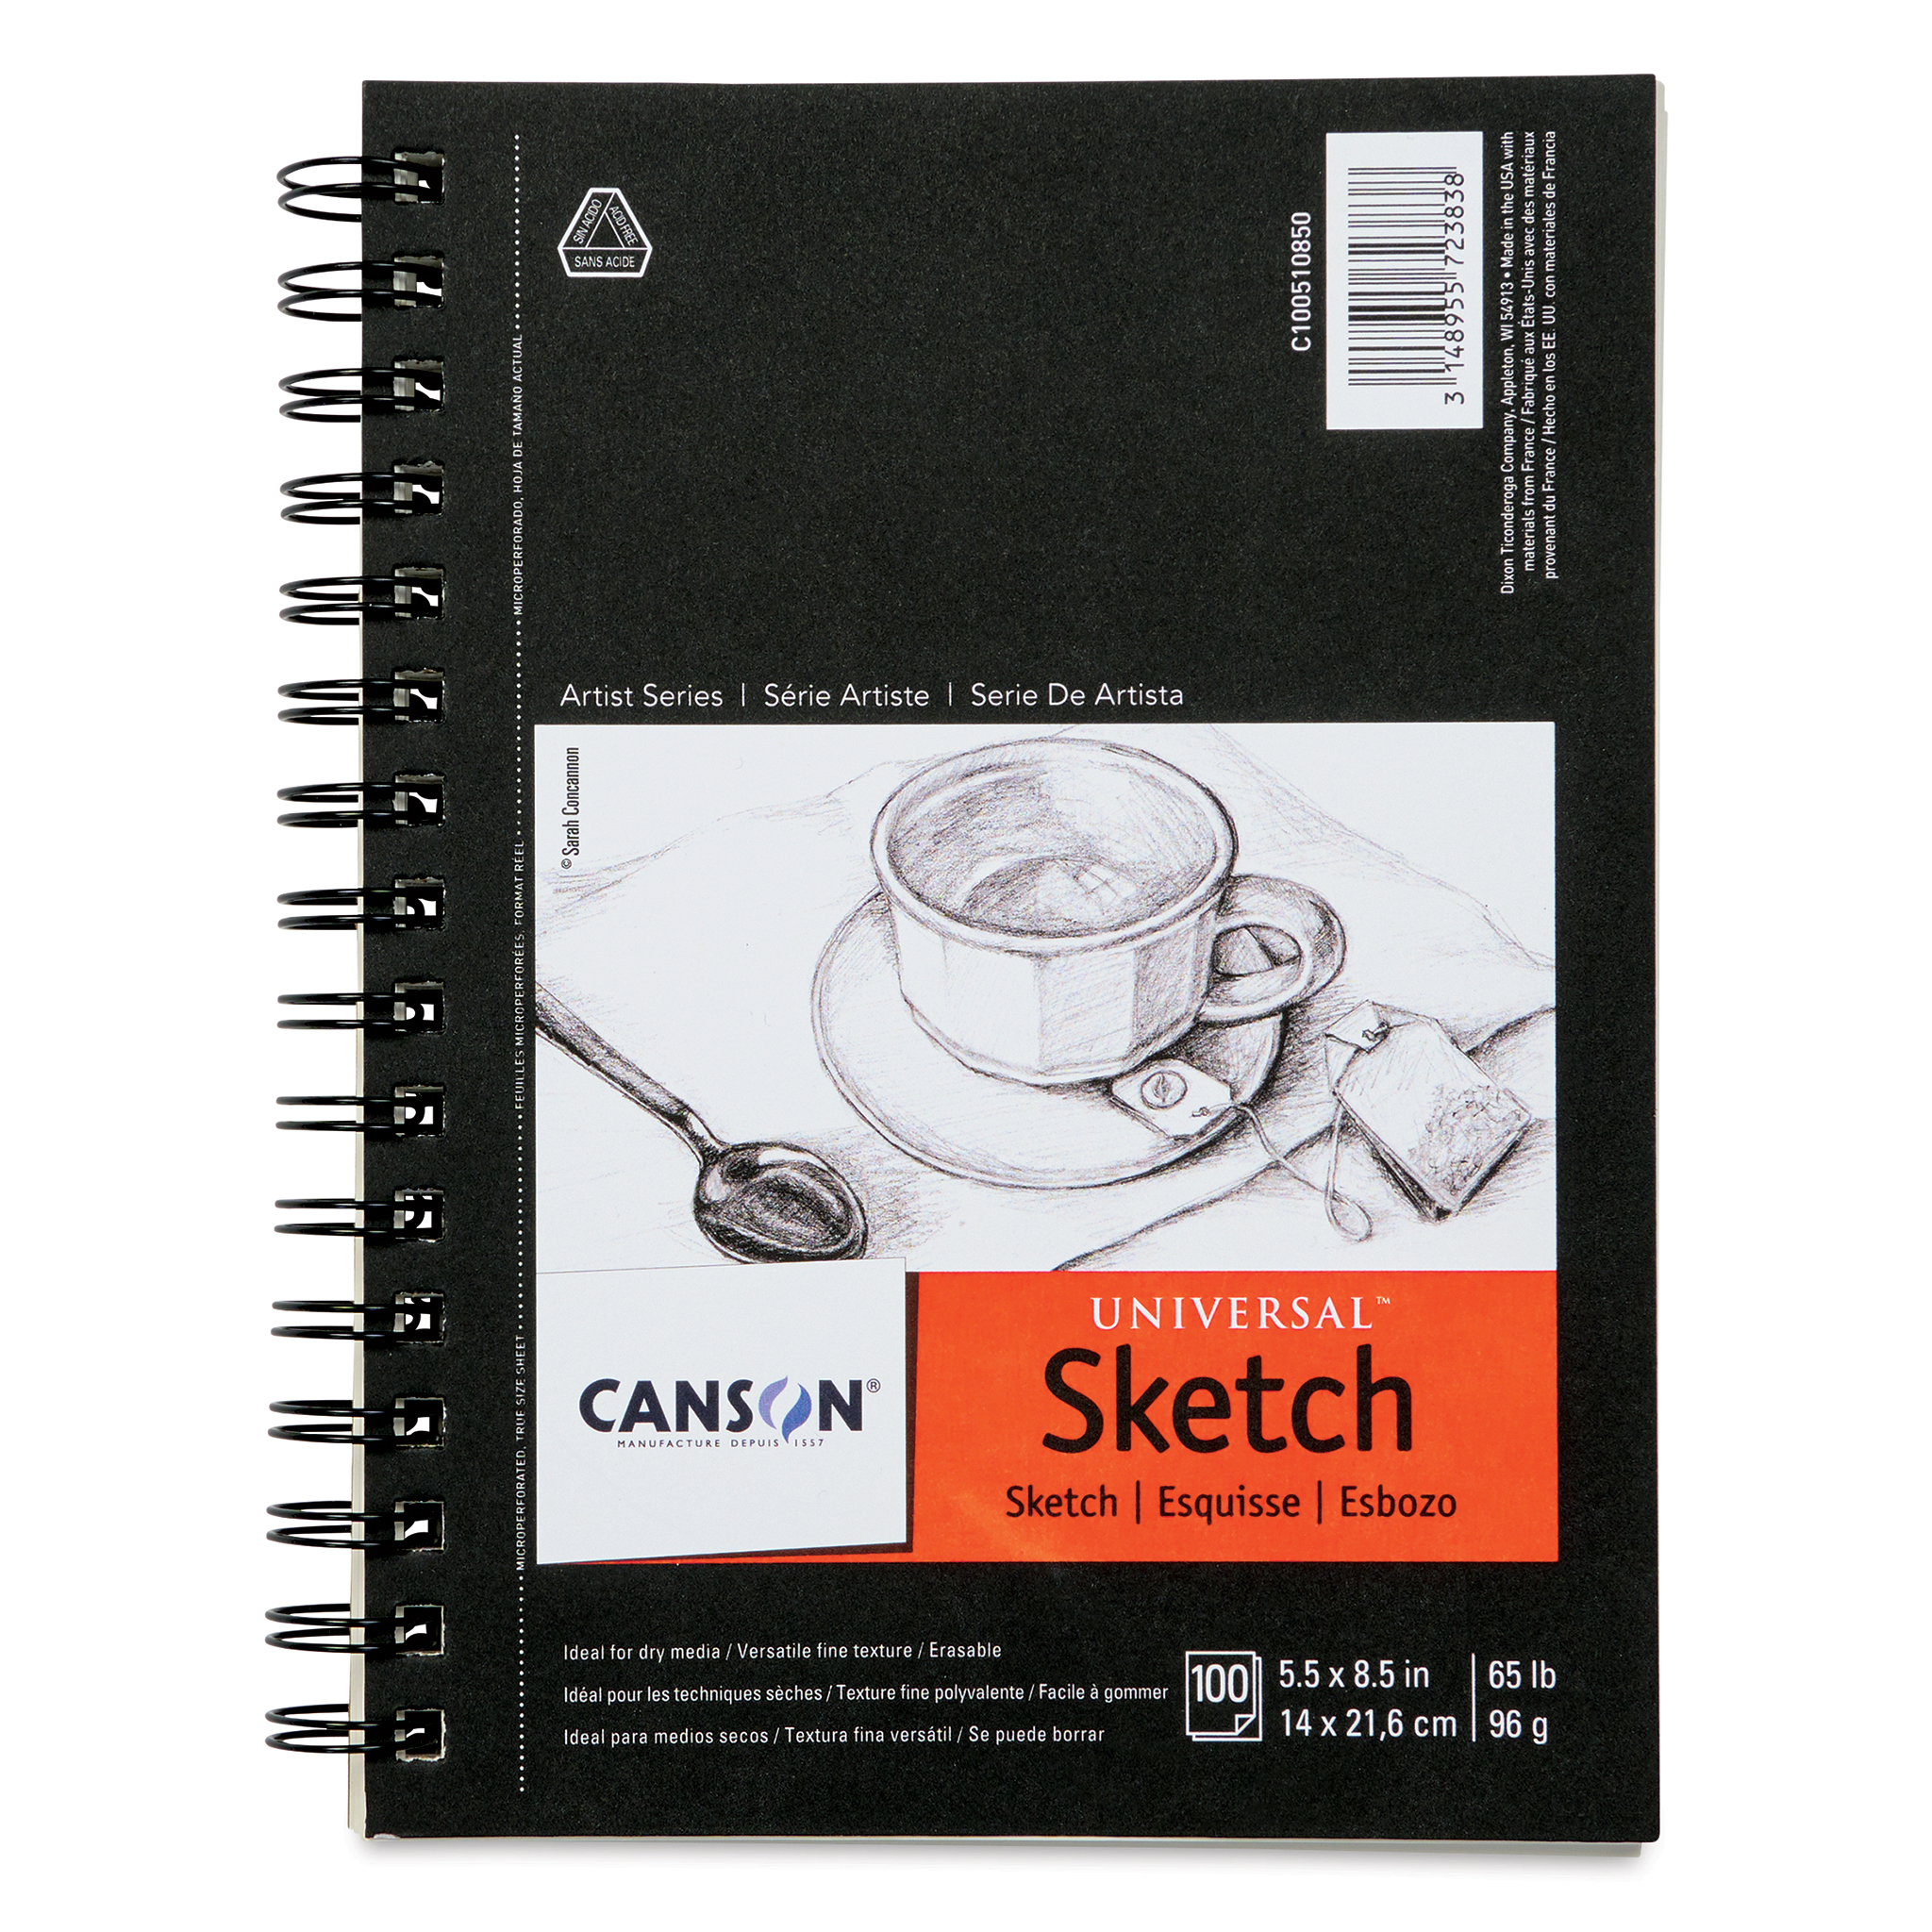 Berkeley Sketch Pad / Drawing Pad / Sketchpad